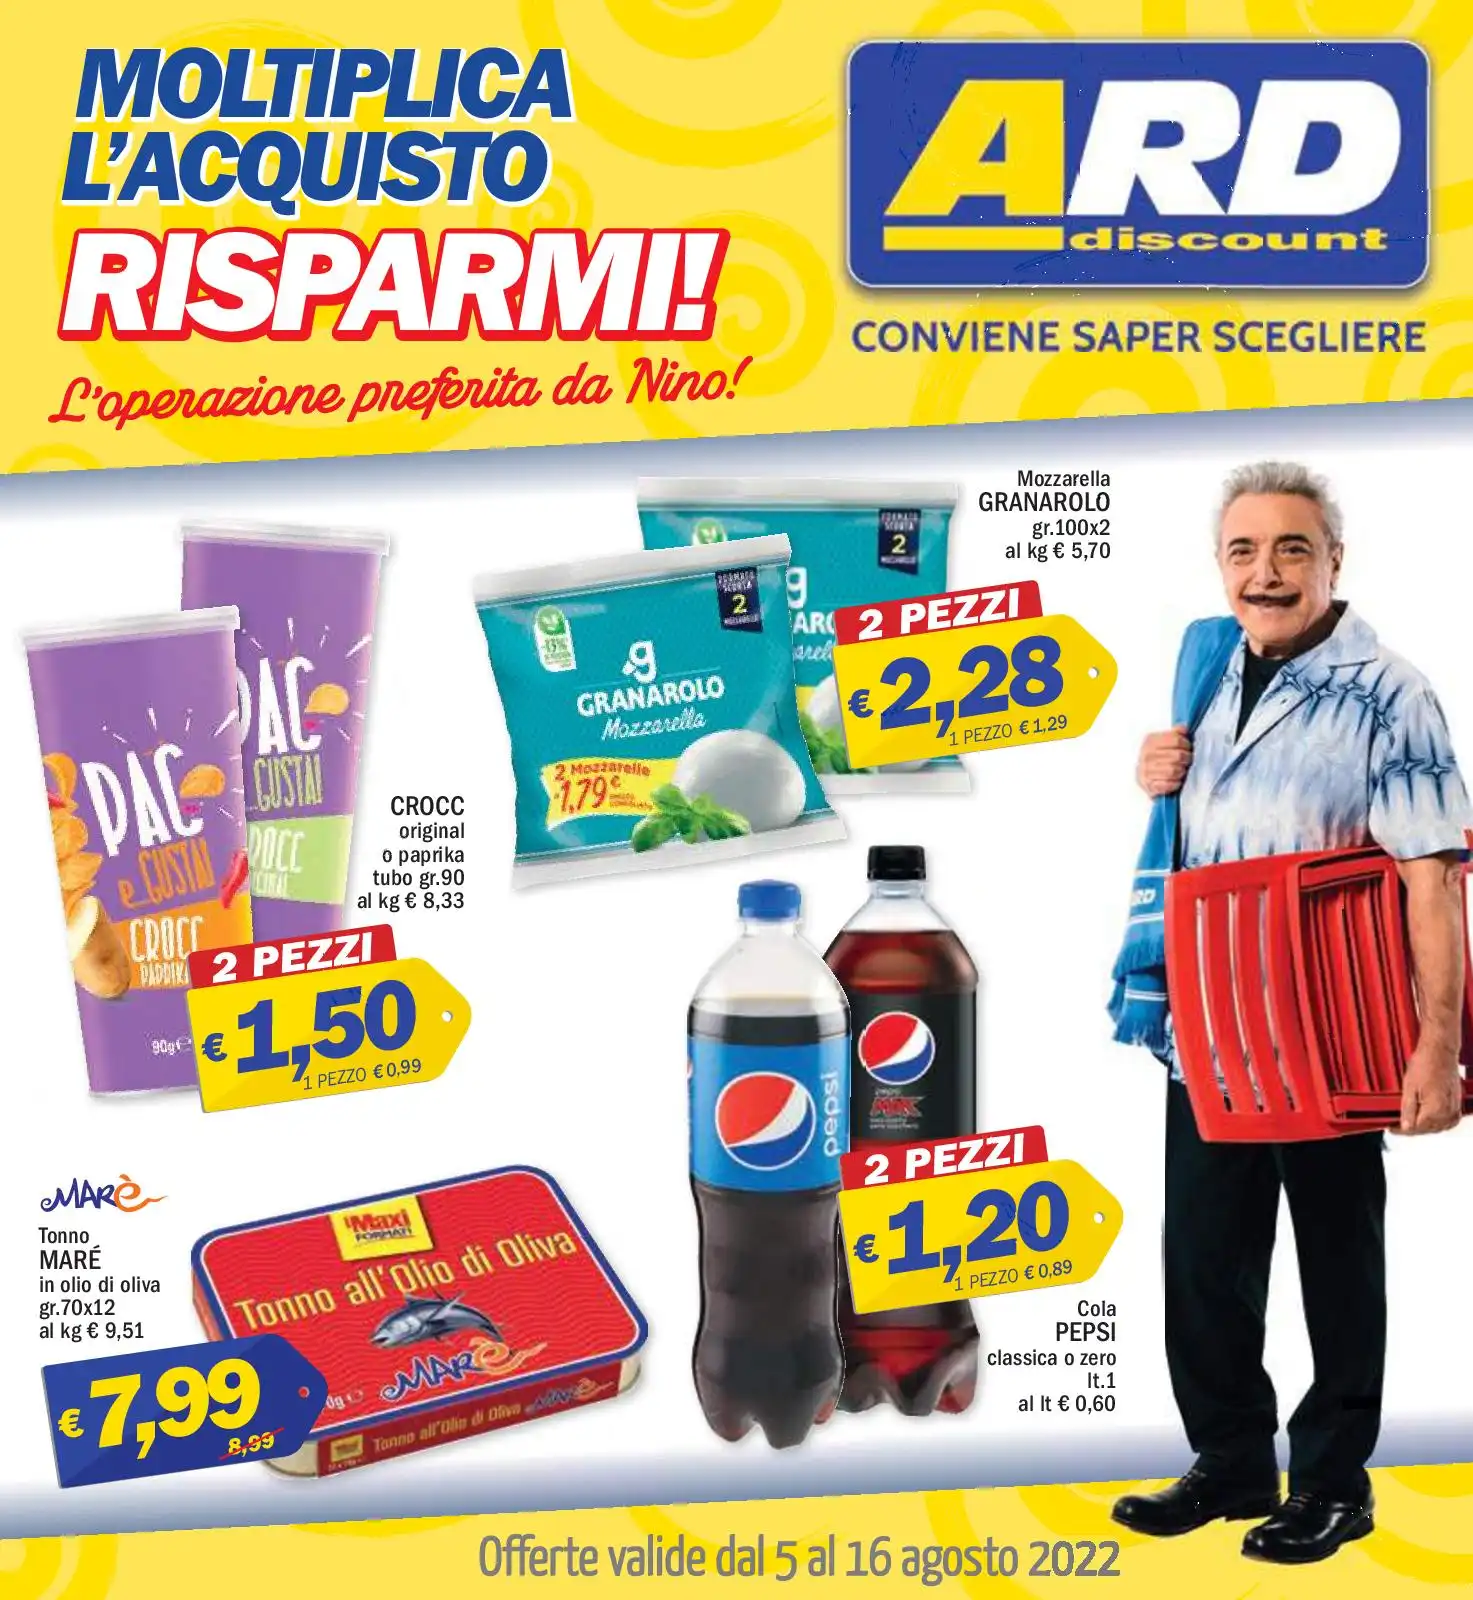 Volantino ARD Discount Speciale Grigliate dal 5/08 al 16/08/2022